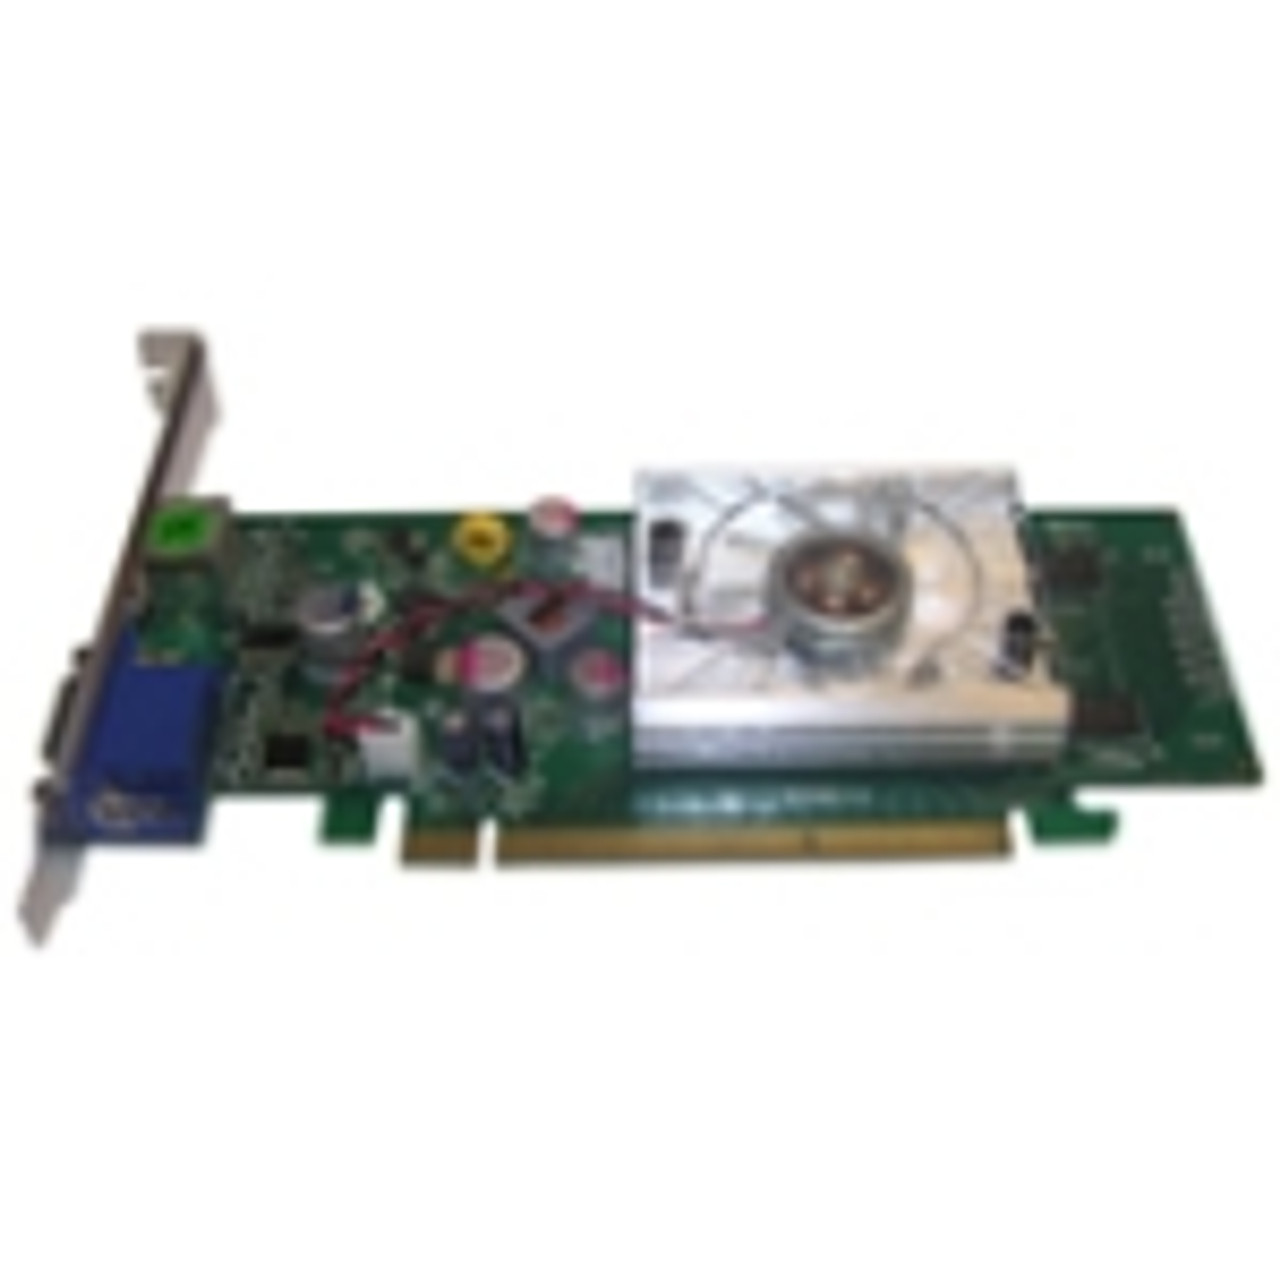 Jaton Nvidia GeForce 8400 GS 512MB DDR2 64-Bit HD-15 PCI-Express 2.0 x16 Video Graphics Card Mfr P/N VIDEO-PX558-TWIN